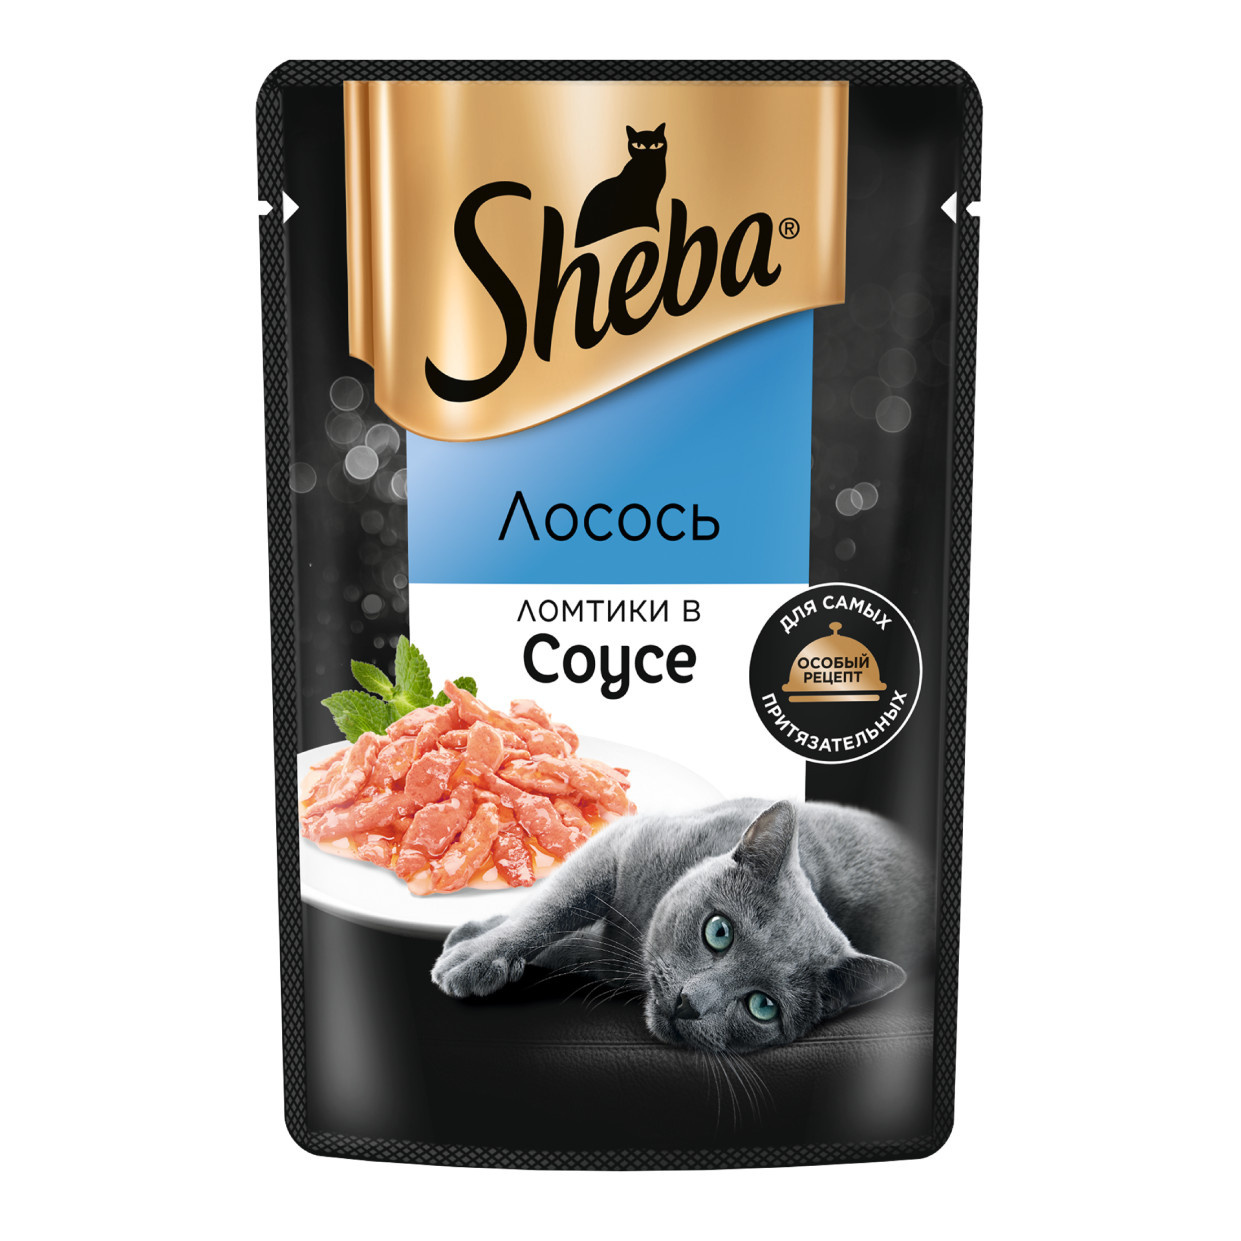 Sheba влажный корм для кошек «Ломтики в соусе с лососем» (75 г) Sheba влажный корм для кошек «Ломтики в соусе с лососем» (75 г) - фото 1